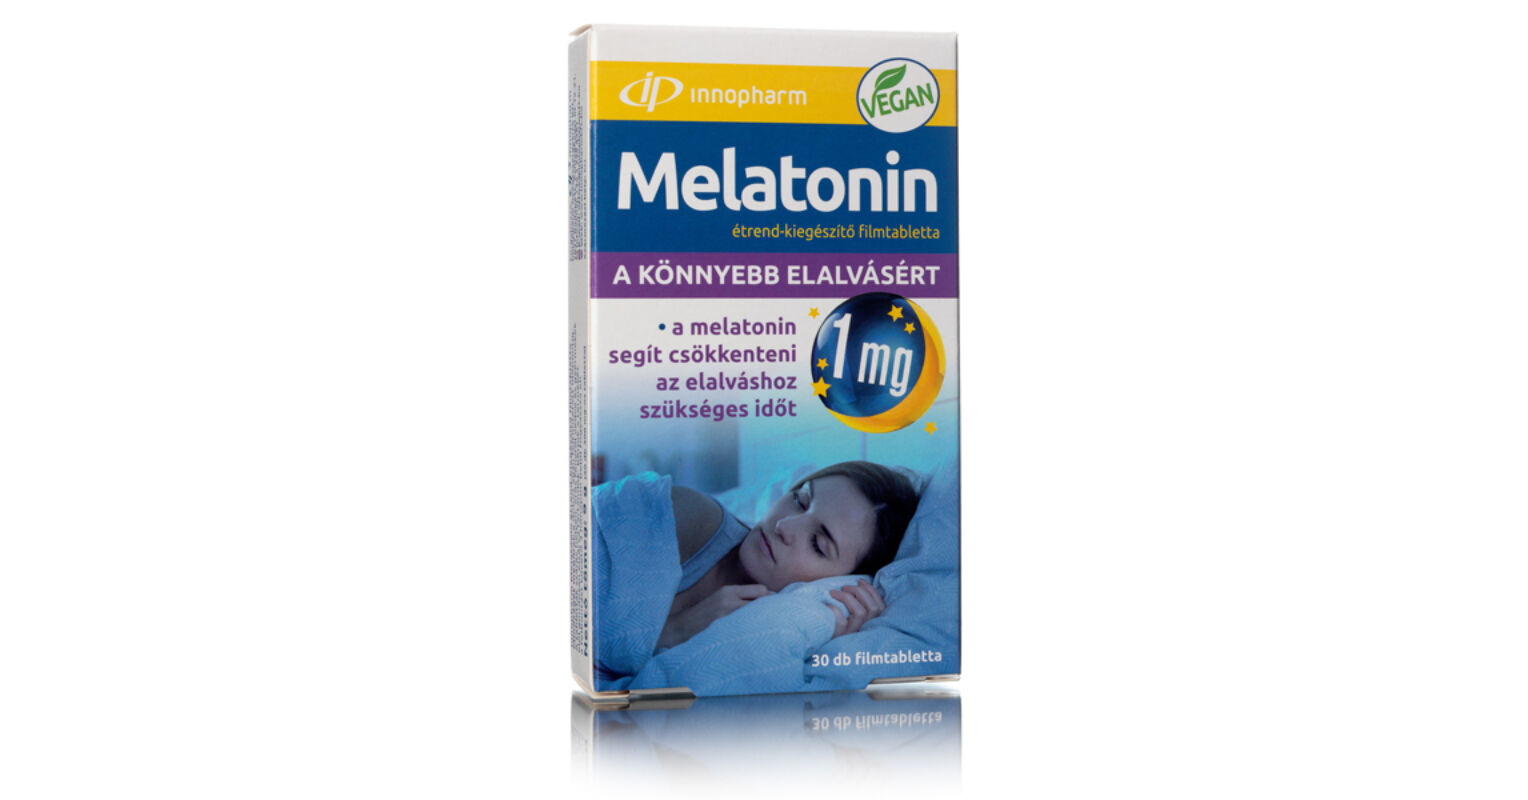 melatonin hormon bőr anti aging)